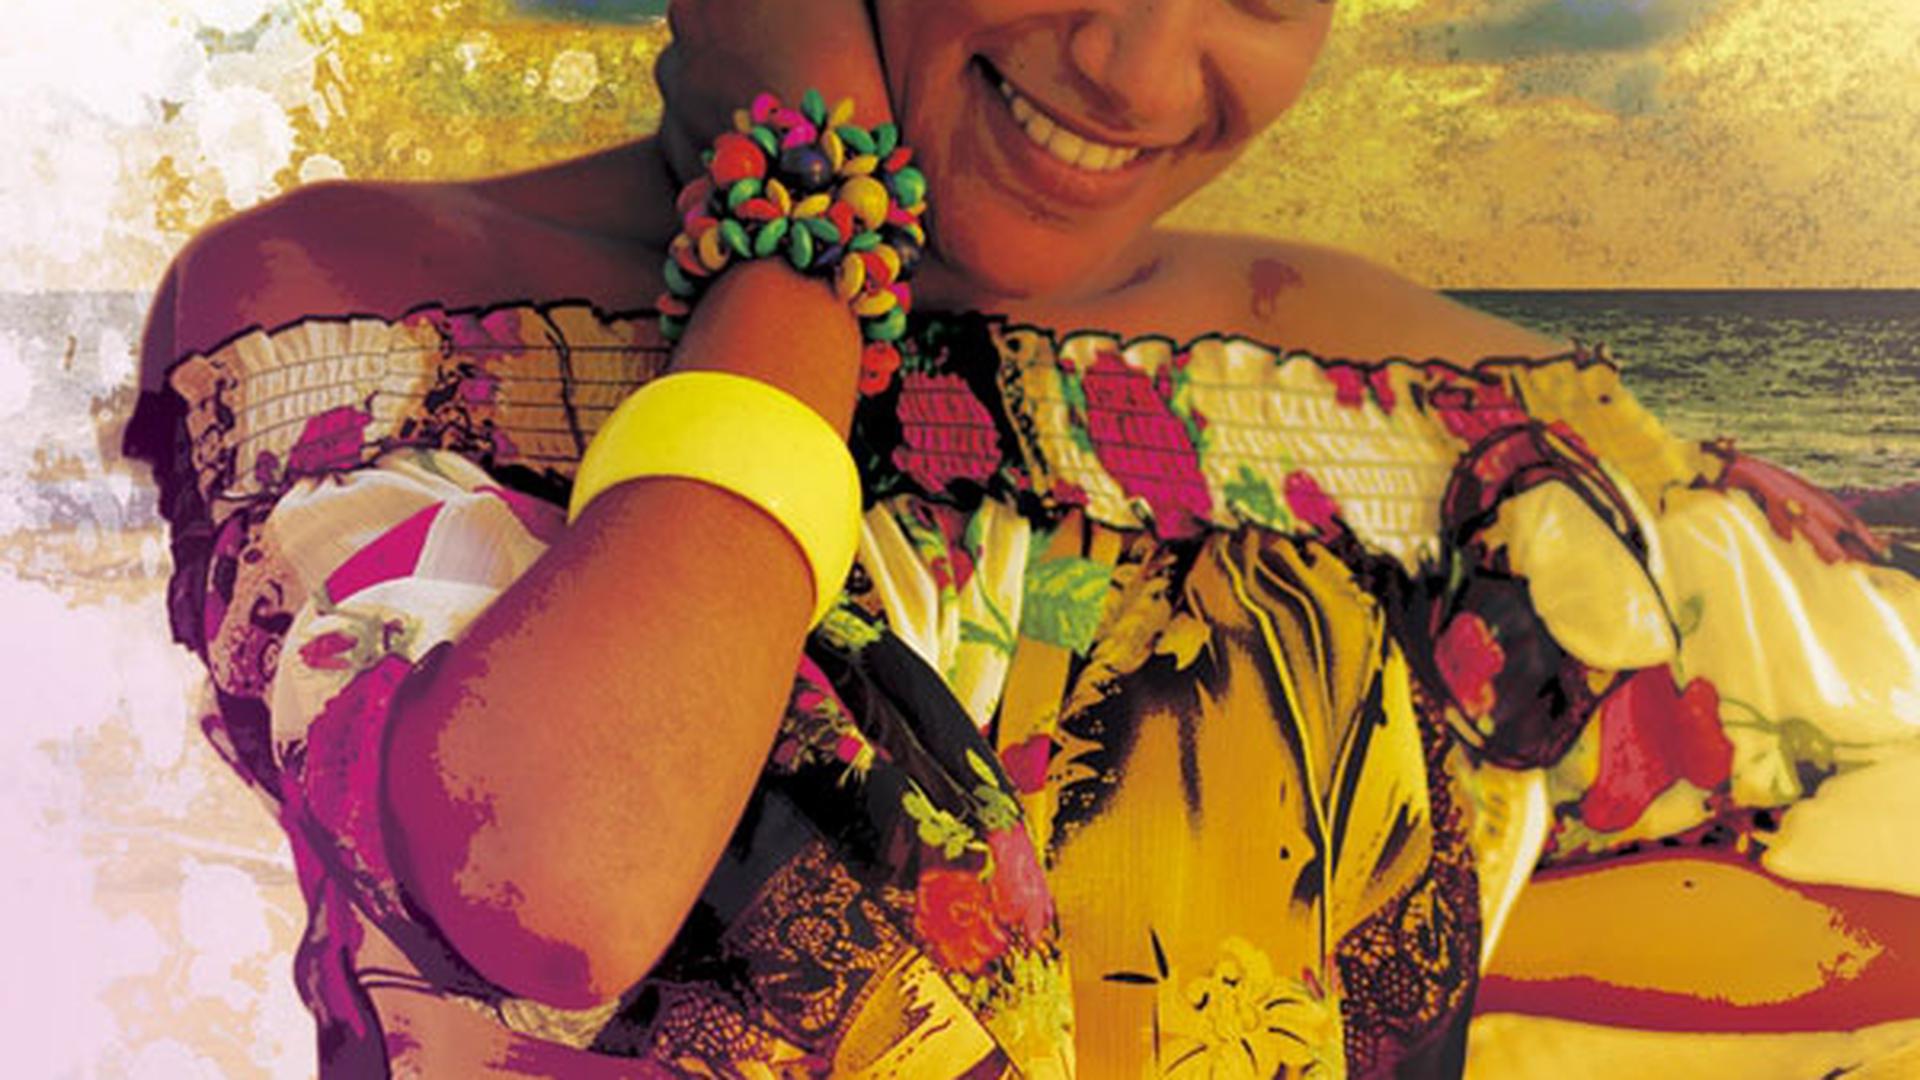 Capa do álbum "Nha vida", de Ceuzany